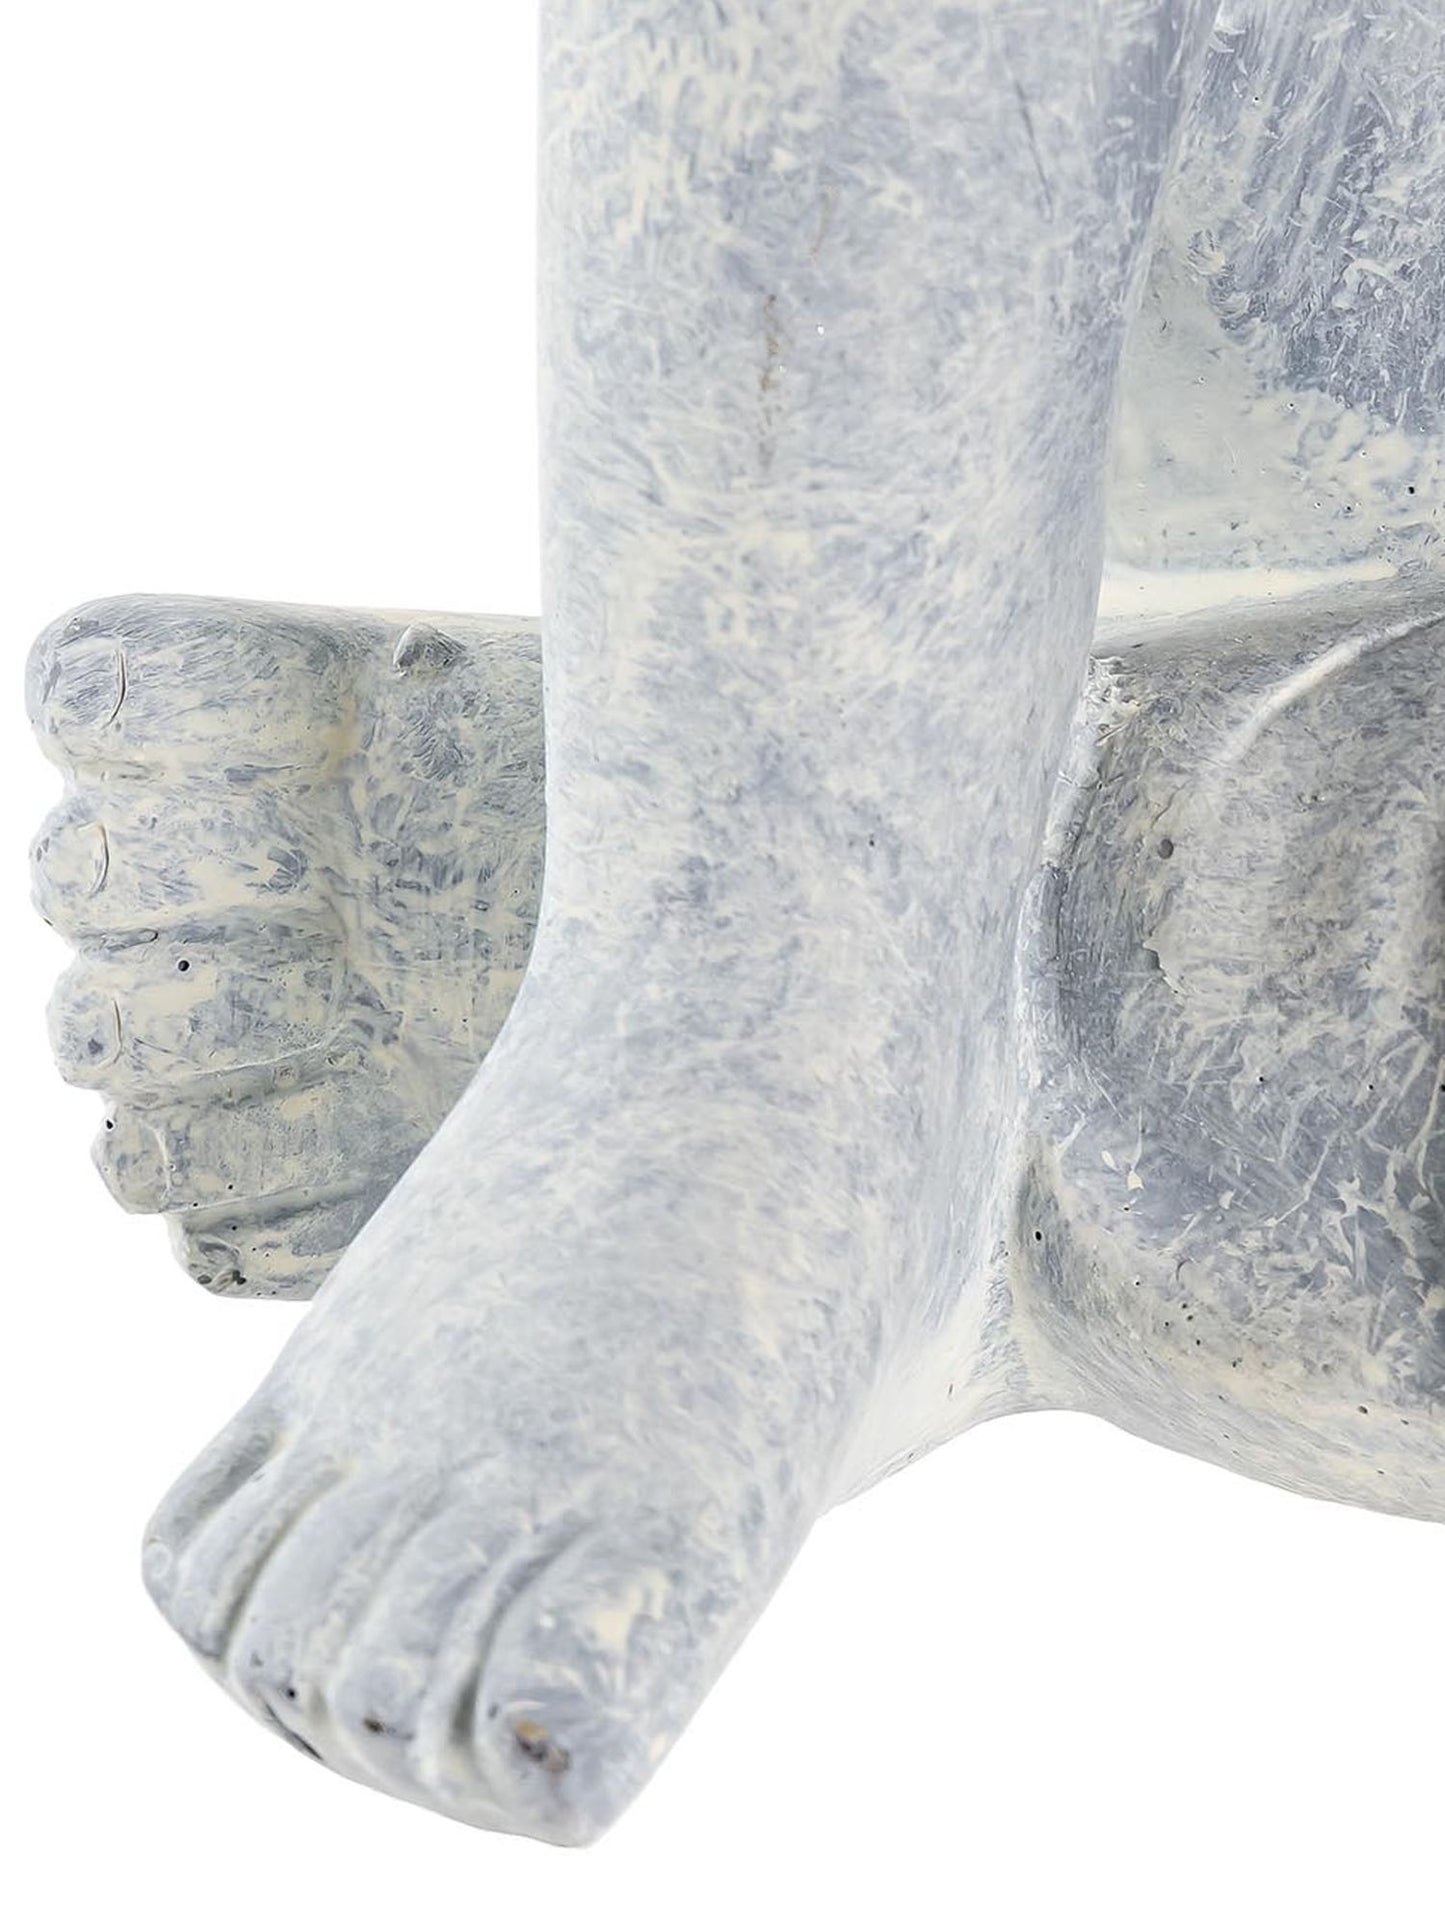 Figura Buda Gris Claro 23 cm - Inciensos y Velas